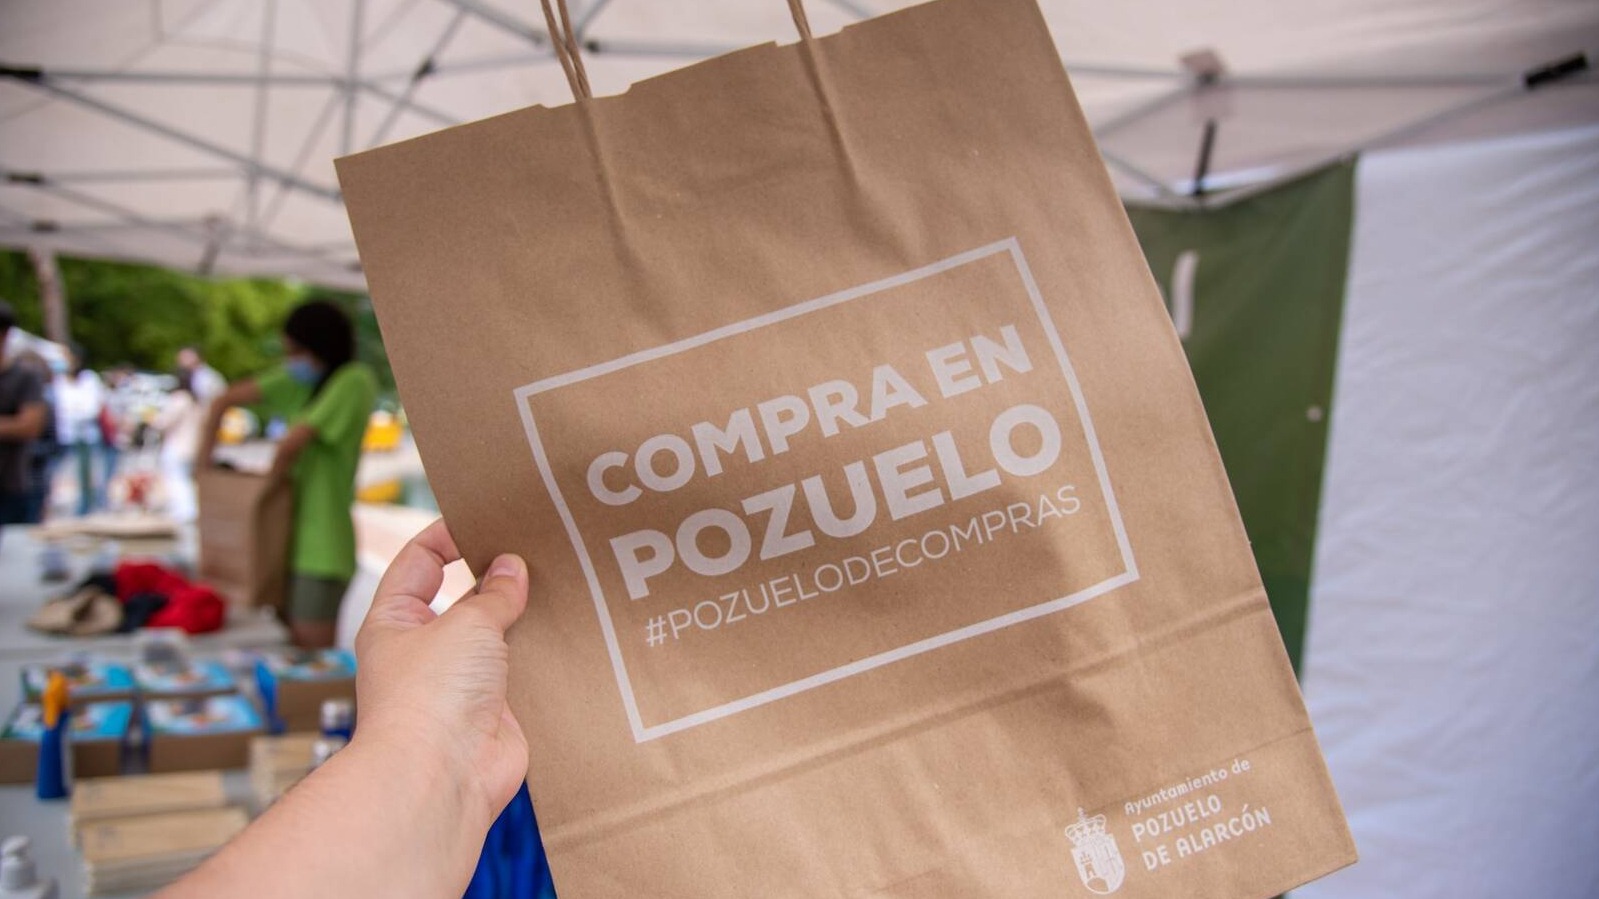 46 comercios y empresas de Pozuelo se suman a la campaña "Rebajas de Verano"